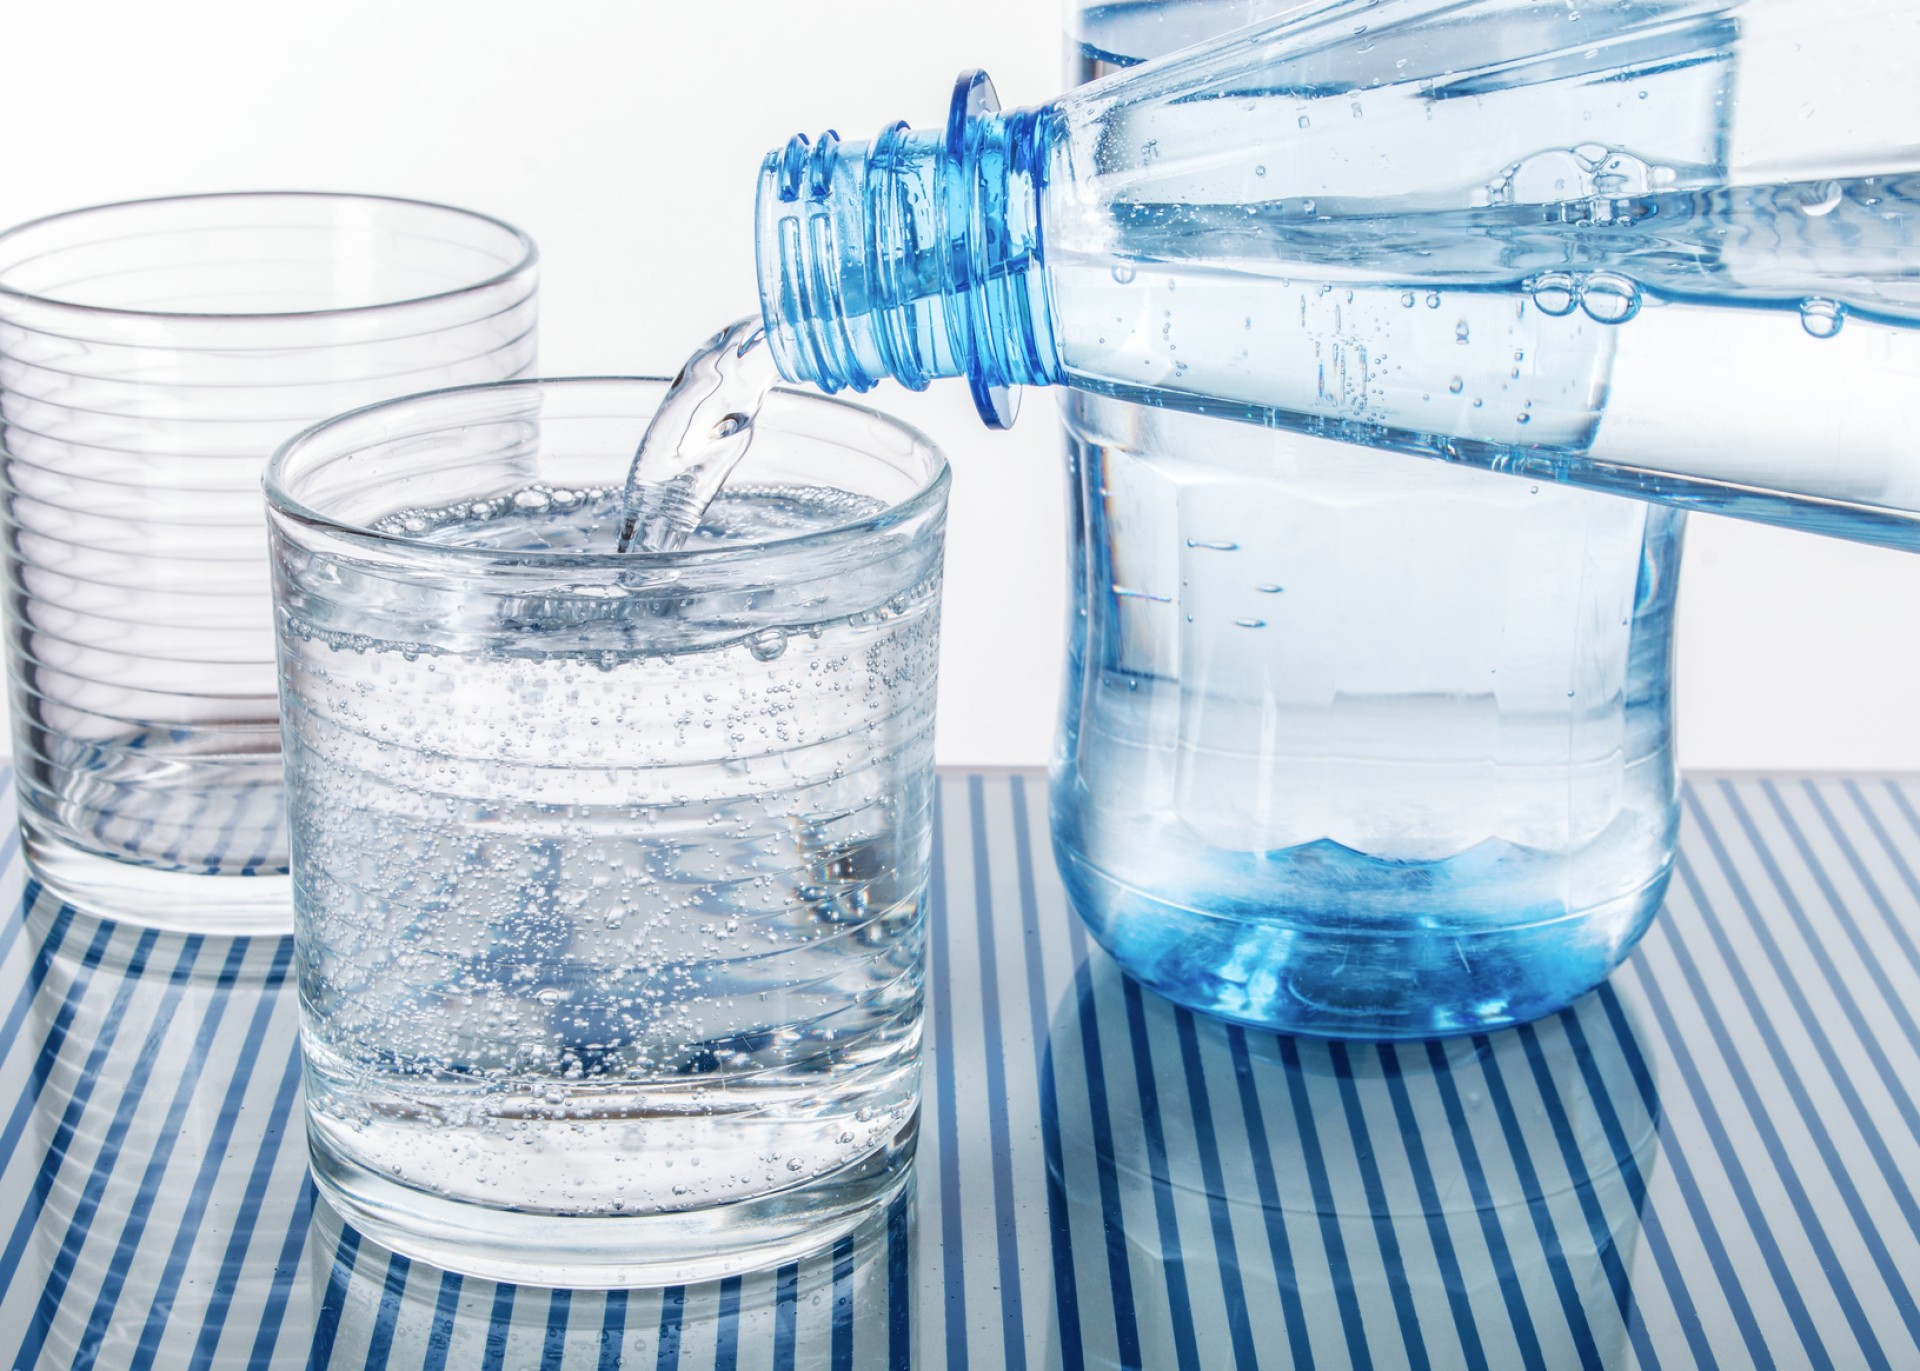 Zwei Gläser werden mit unterschiedlichem Wasser gefüllt, um die verschiedenen Anforderungen an Wasseraufbereitung zu illustrieren